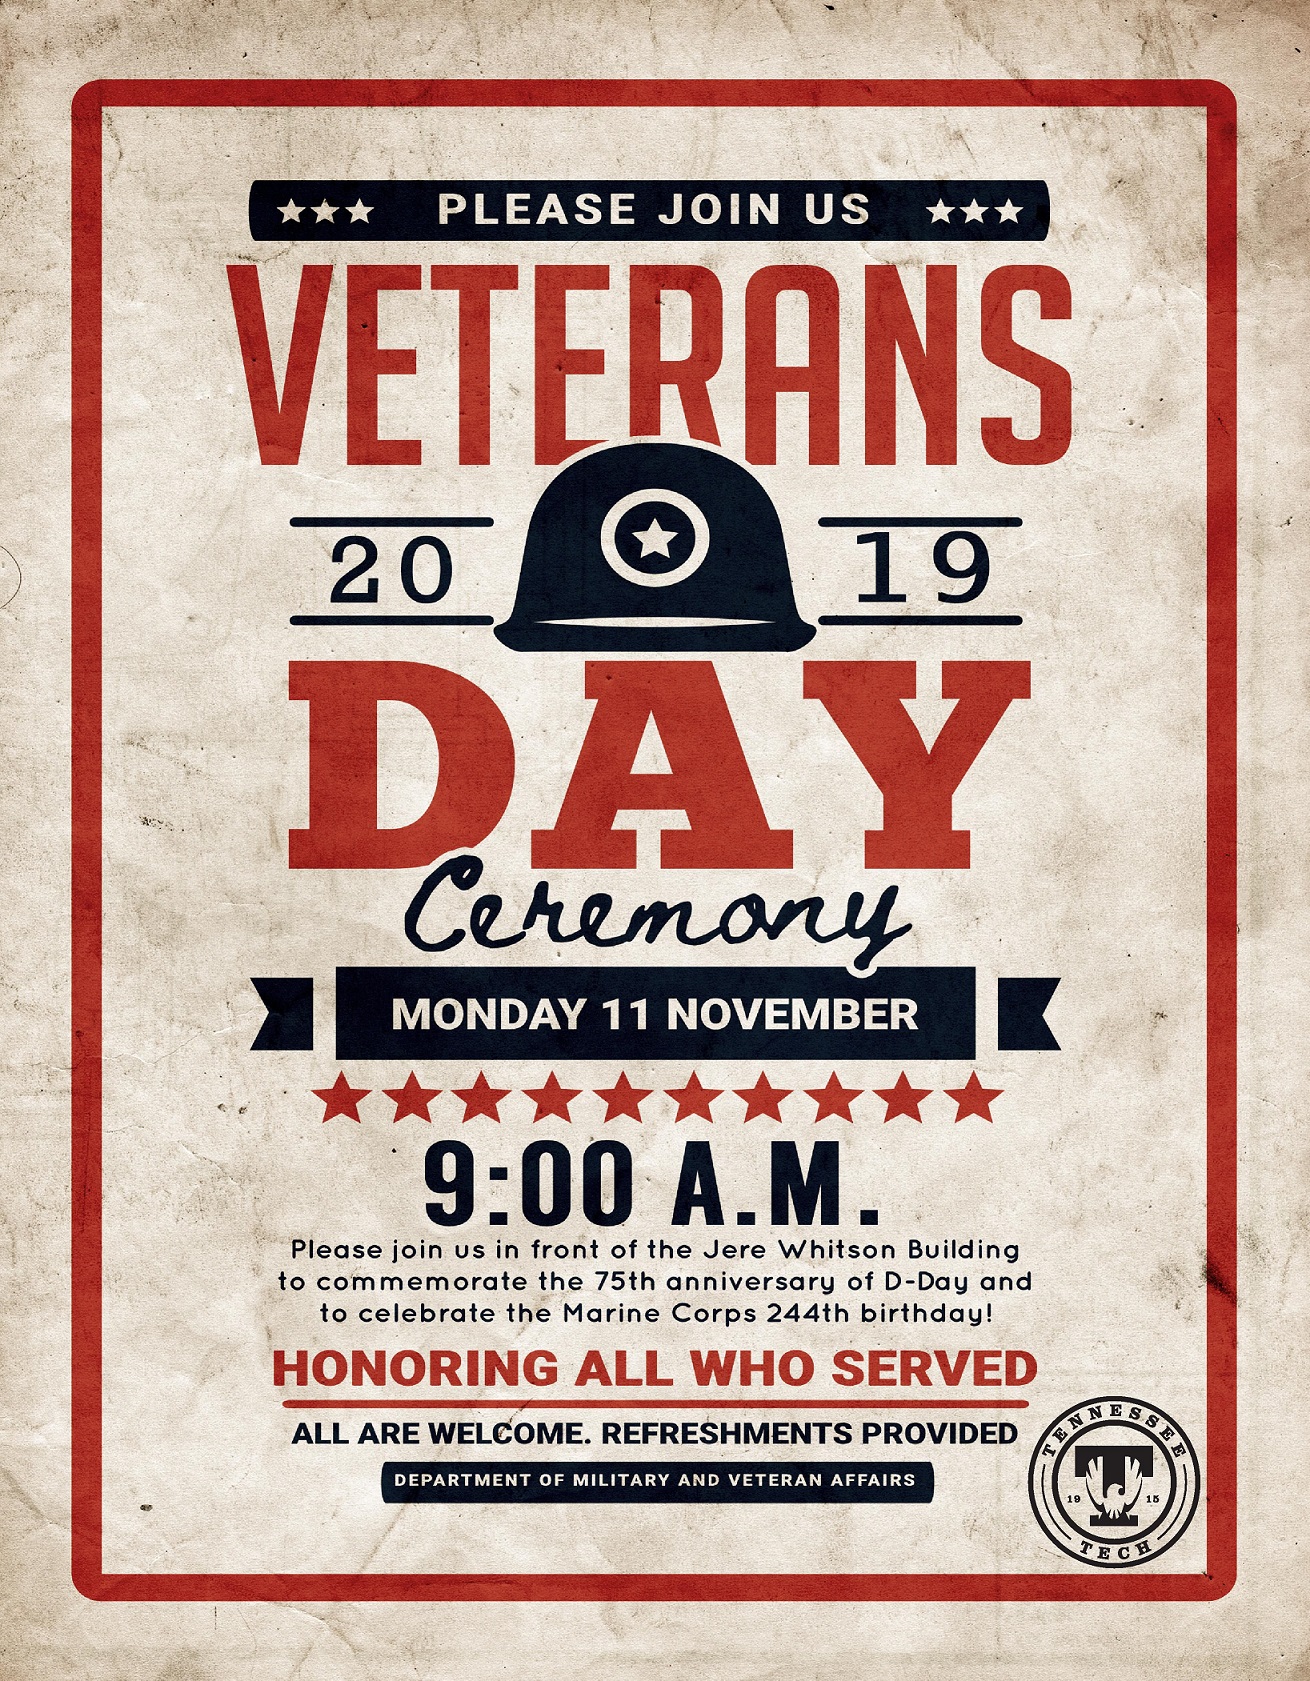 Veterans Day 2019 poster